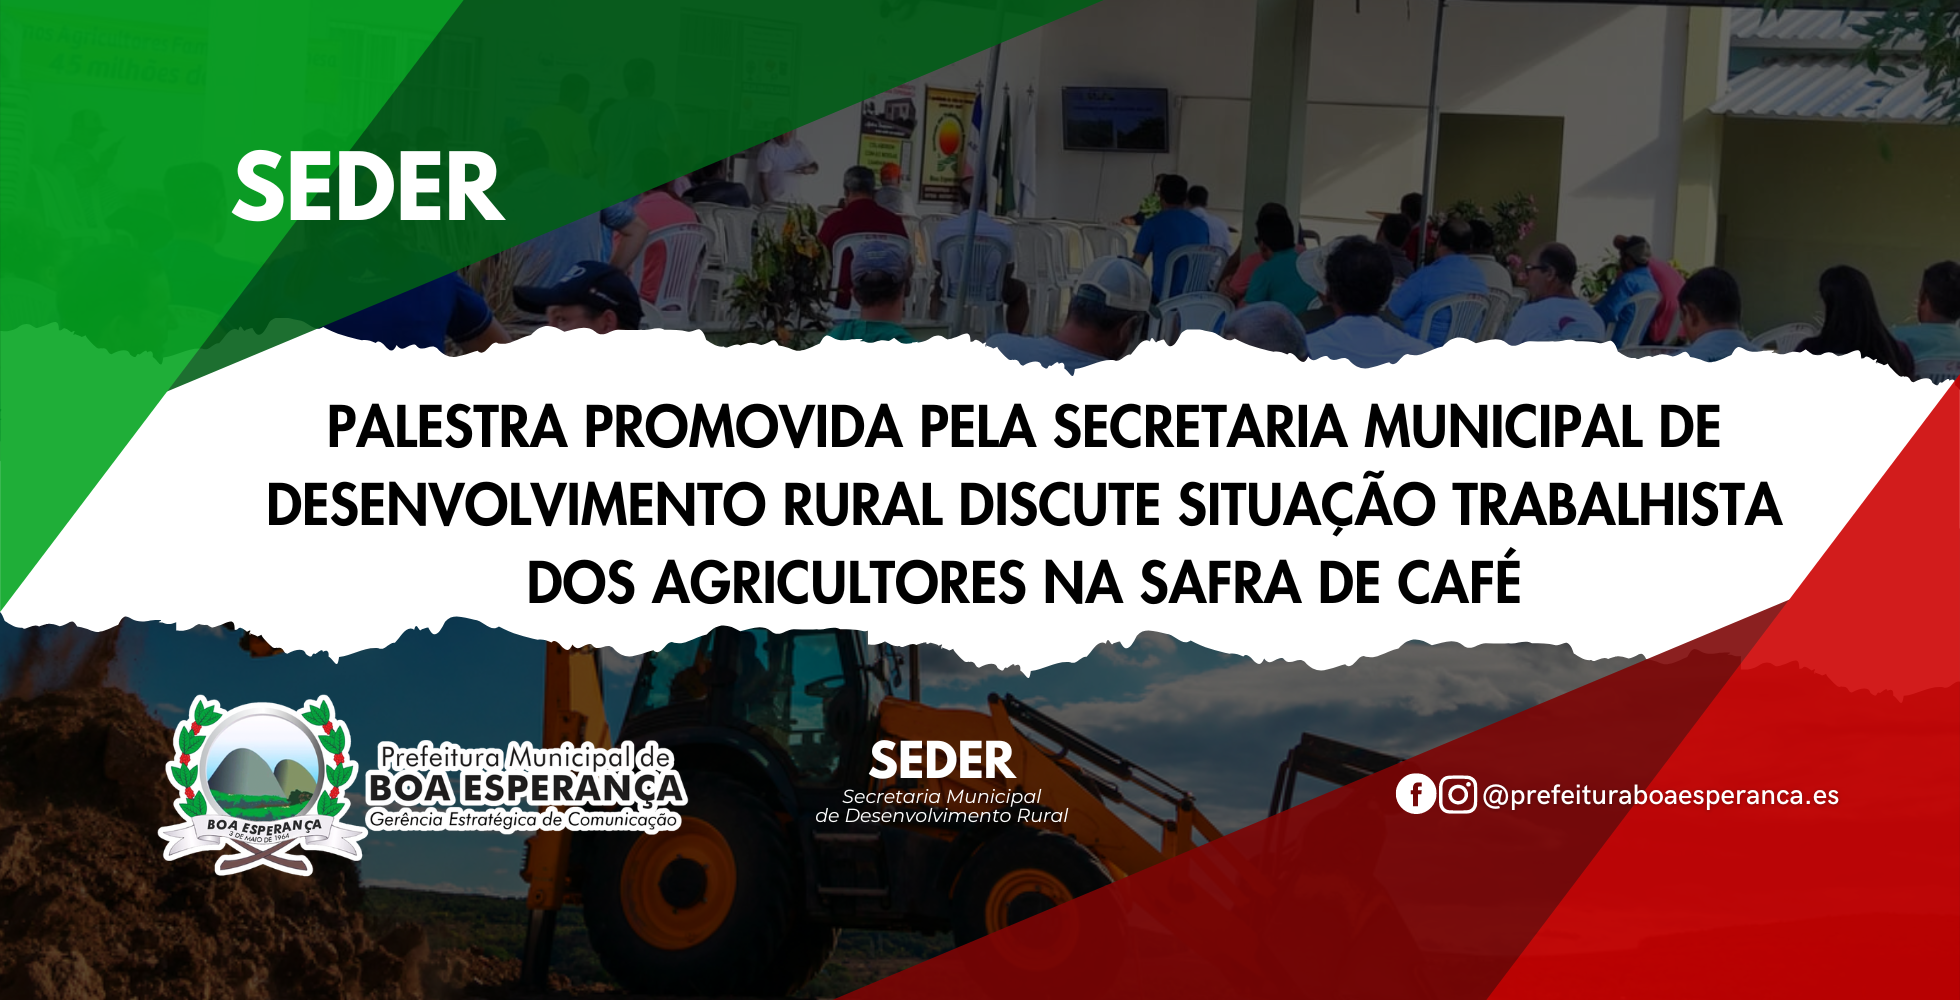 Palestra promovida pela Secretaria Municipal de Desenvolvimento Rural discute situação trabalhista dos agricultores na safra de café